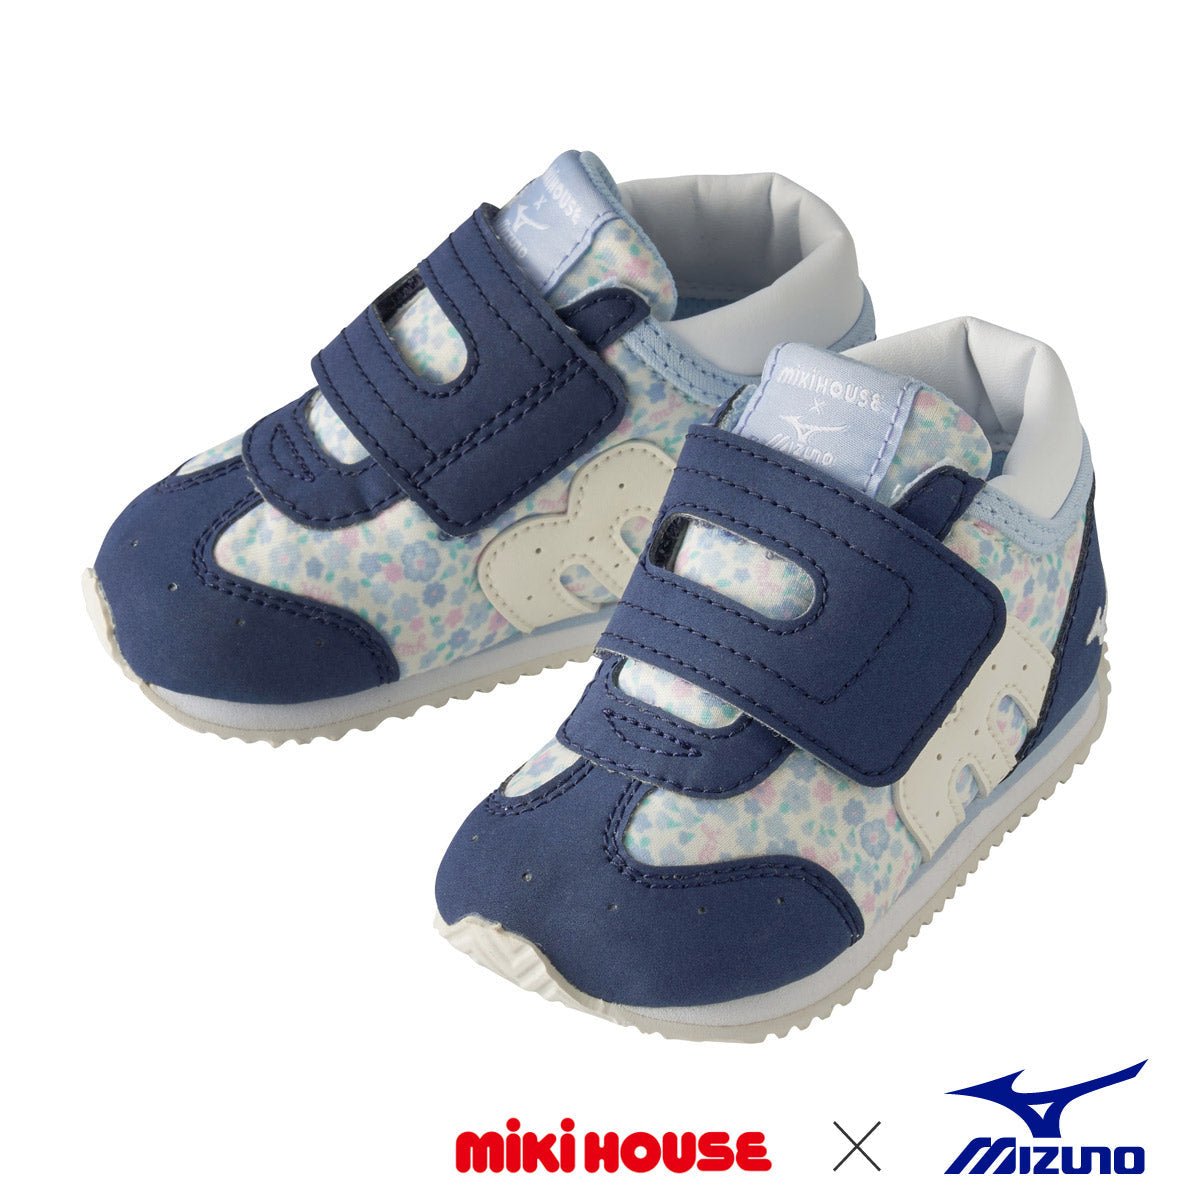 MIKI HOUSE & Mizuno Second Shoes -Floral - MIKI HOUSE USA